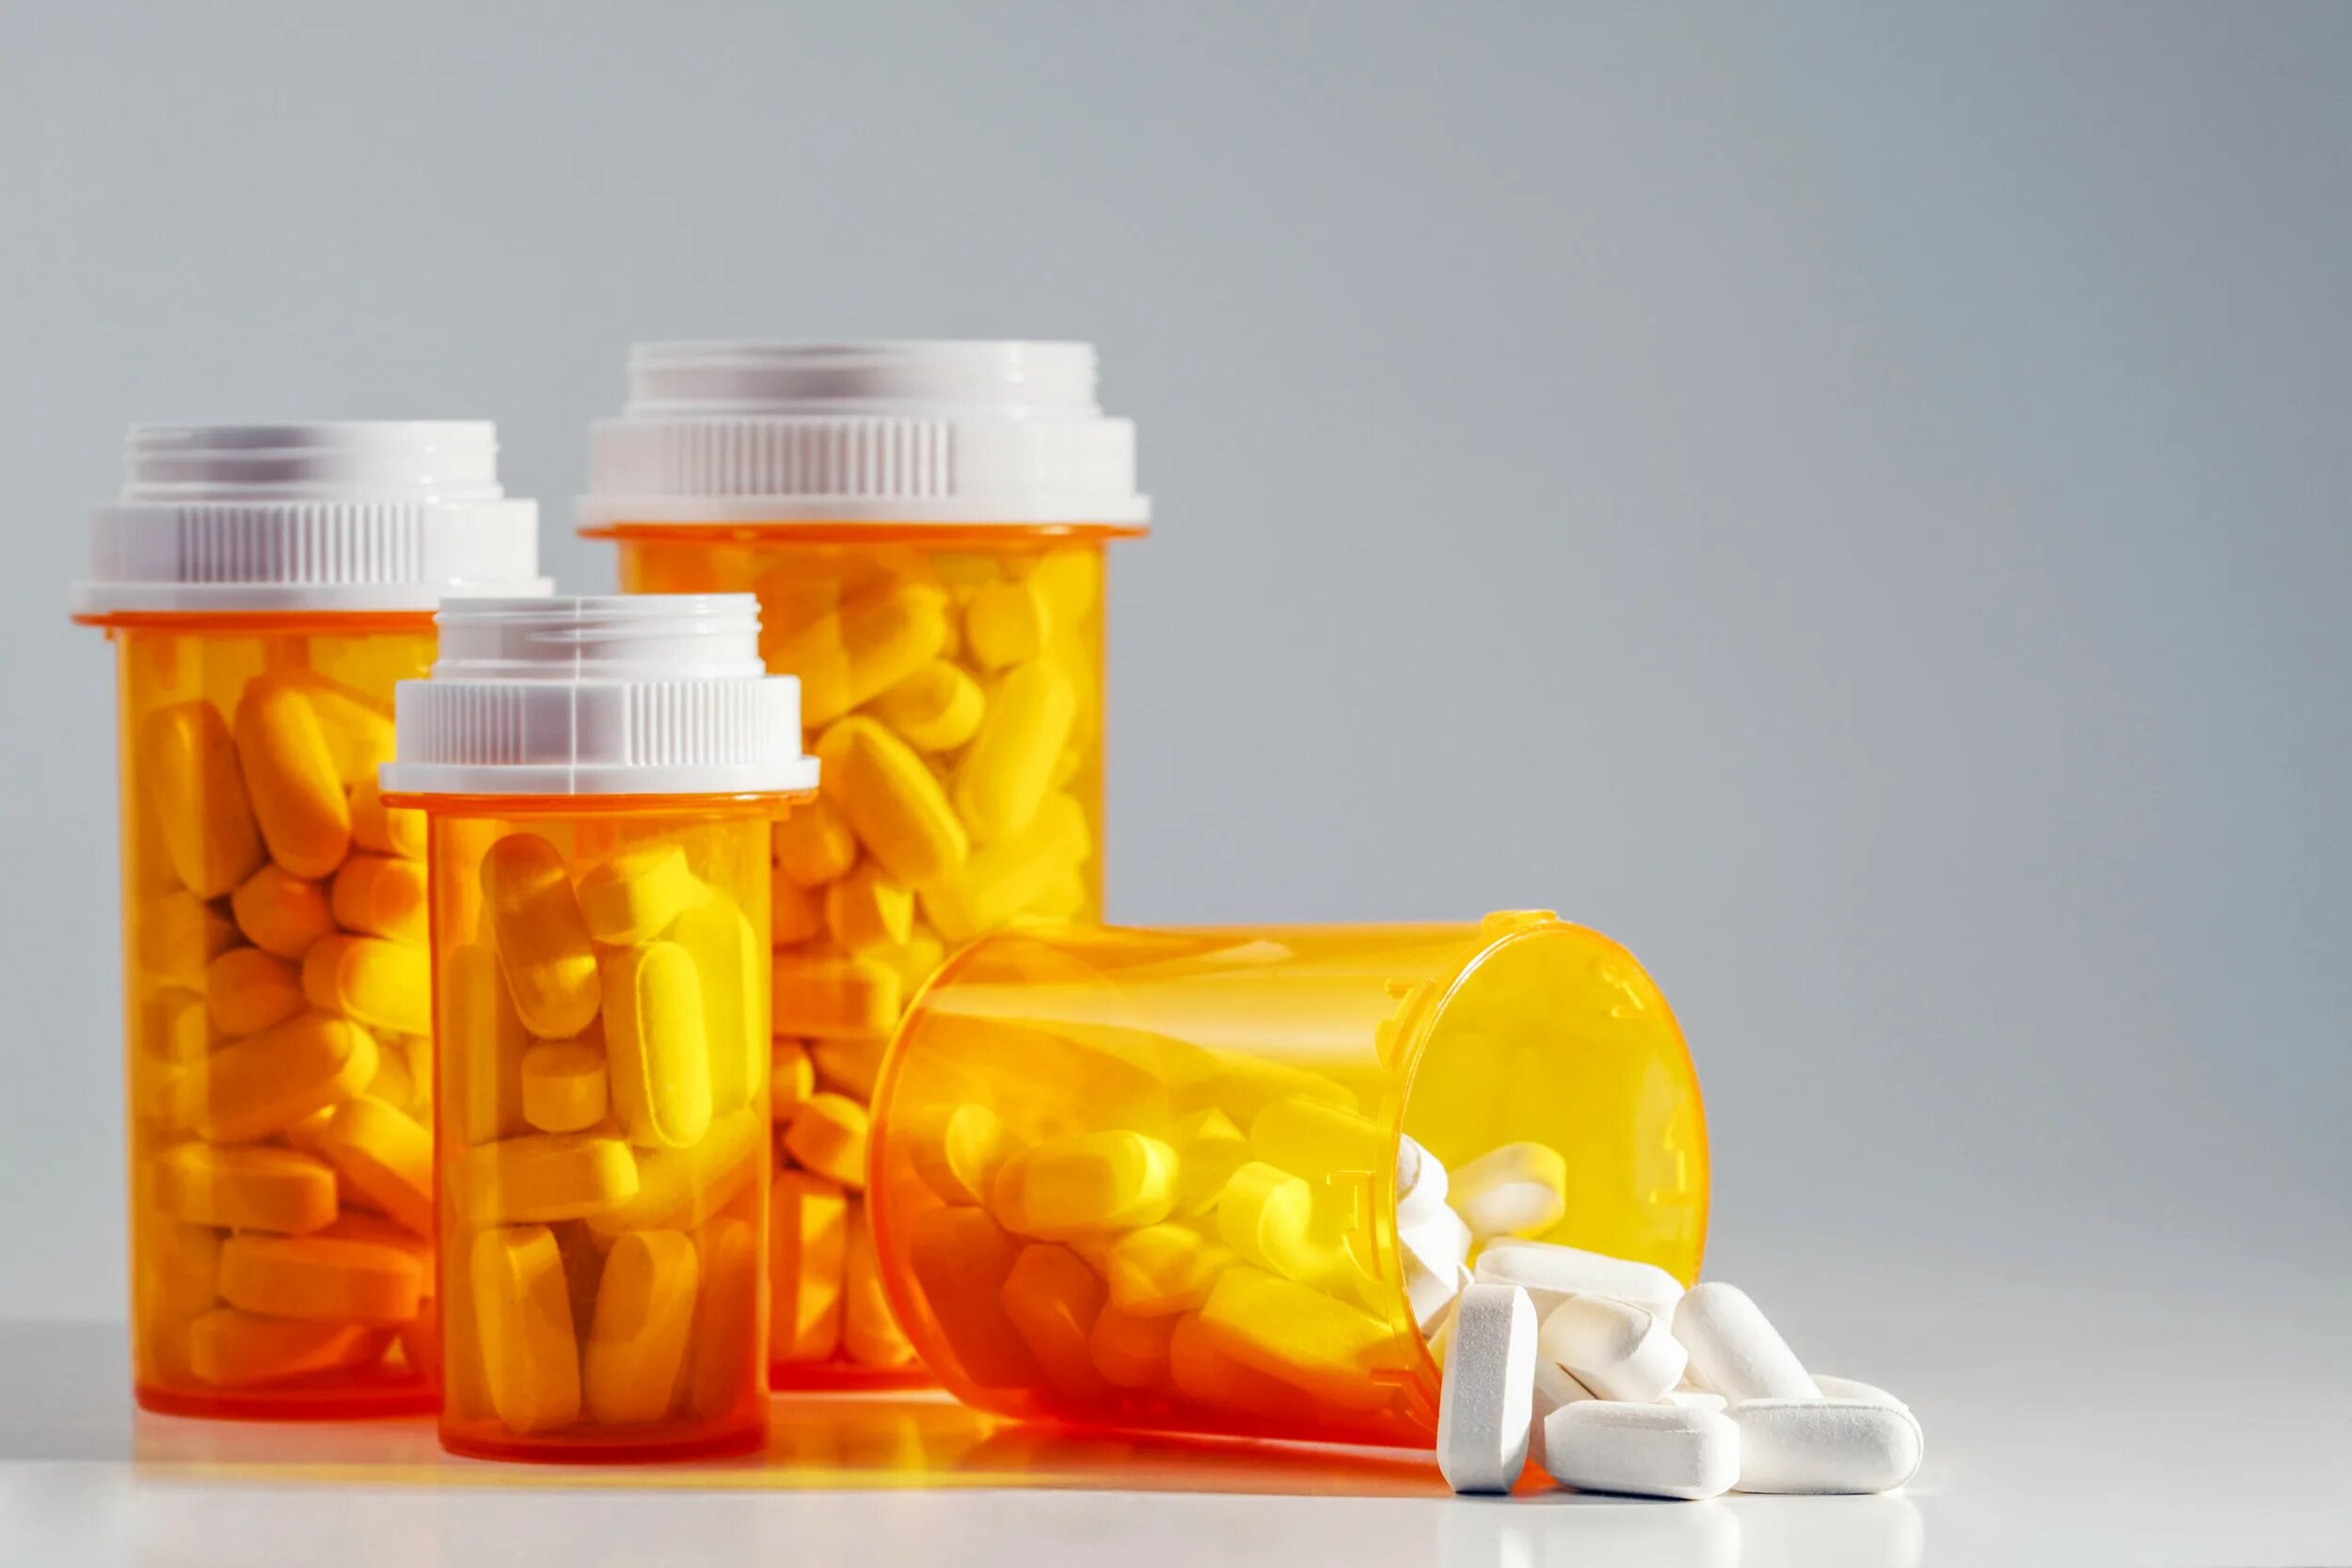 Лекарство в бутылочке. Баночка с таблетками. Желтые баночки для лекарств. Таблетки в желтой баночке. Оранжевые баночки для лекарств.